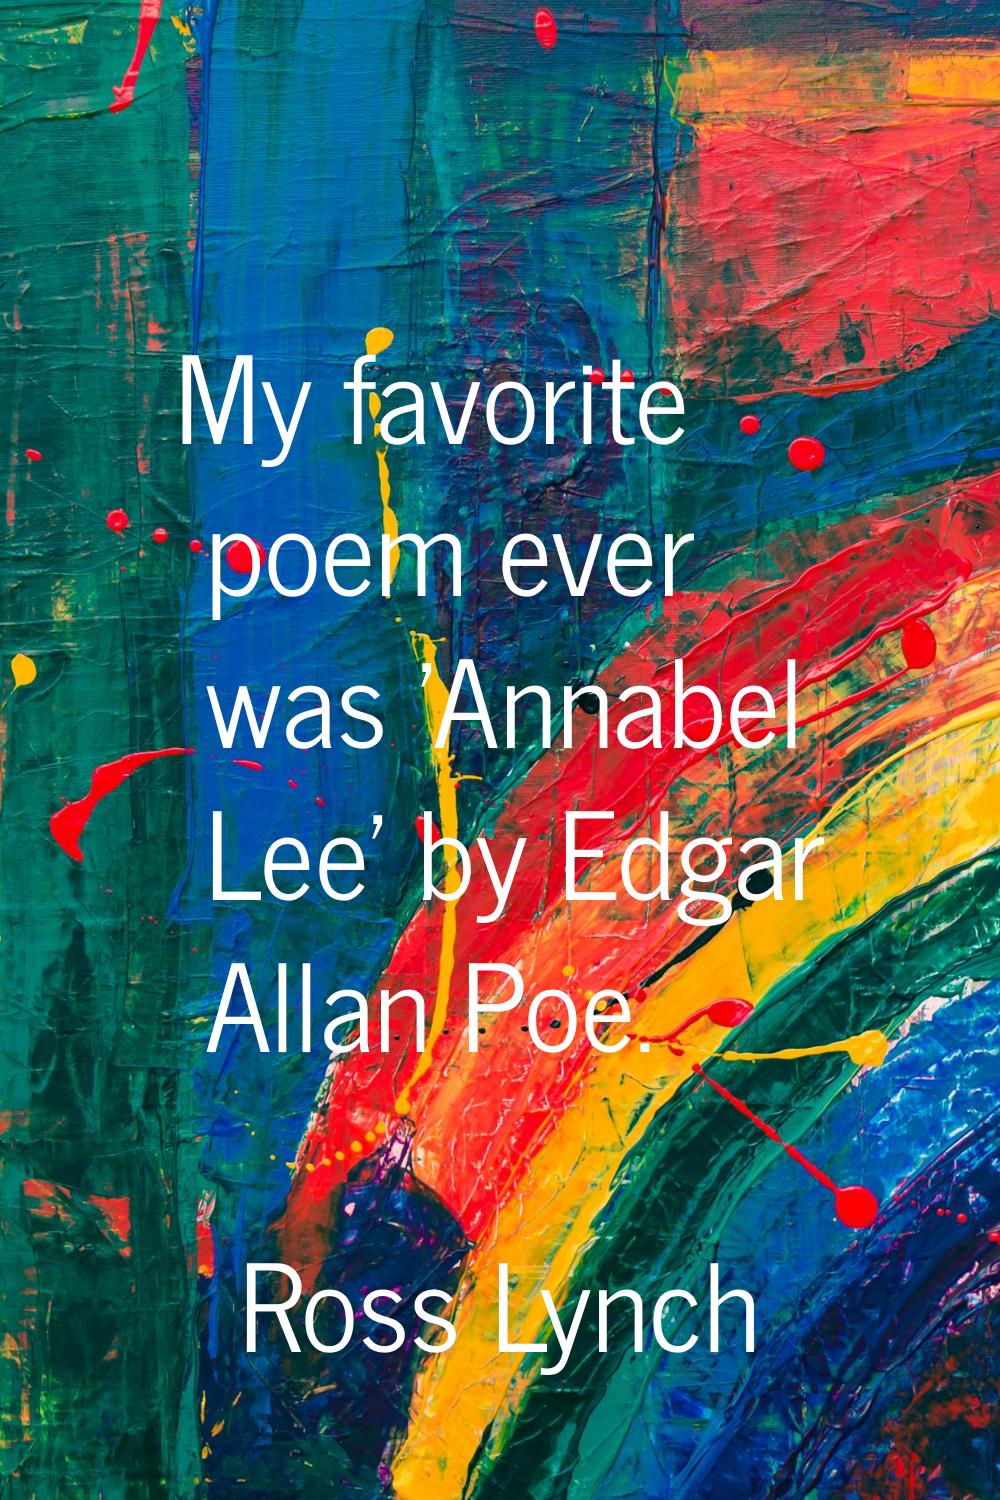 My favorite poem ever was 'Annabel Lee' by Edgar Allan Poe.